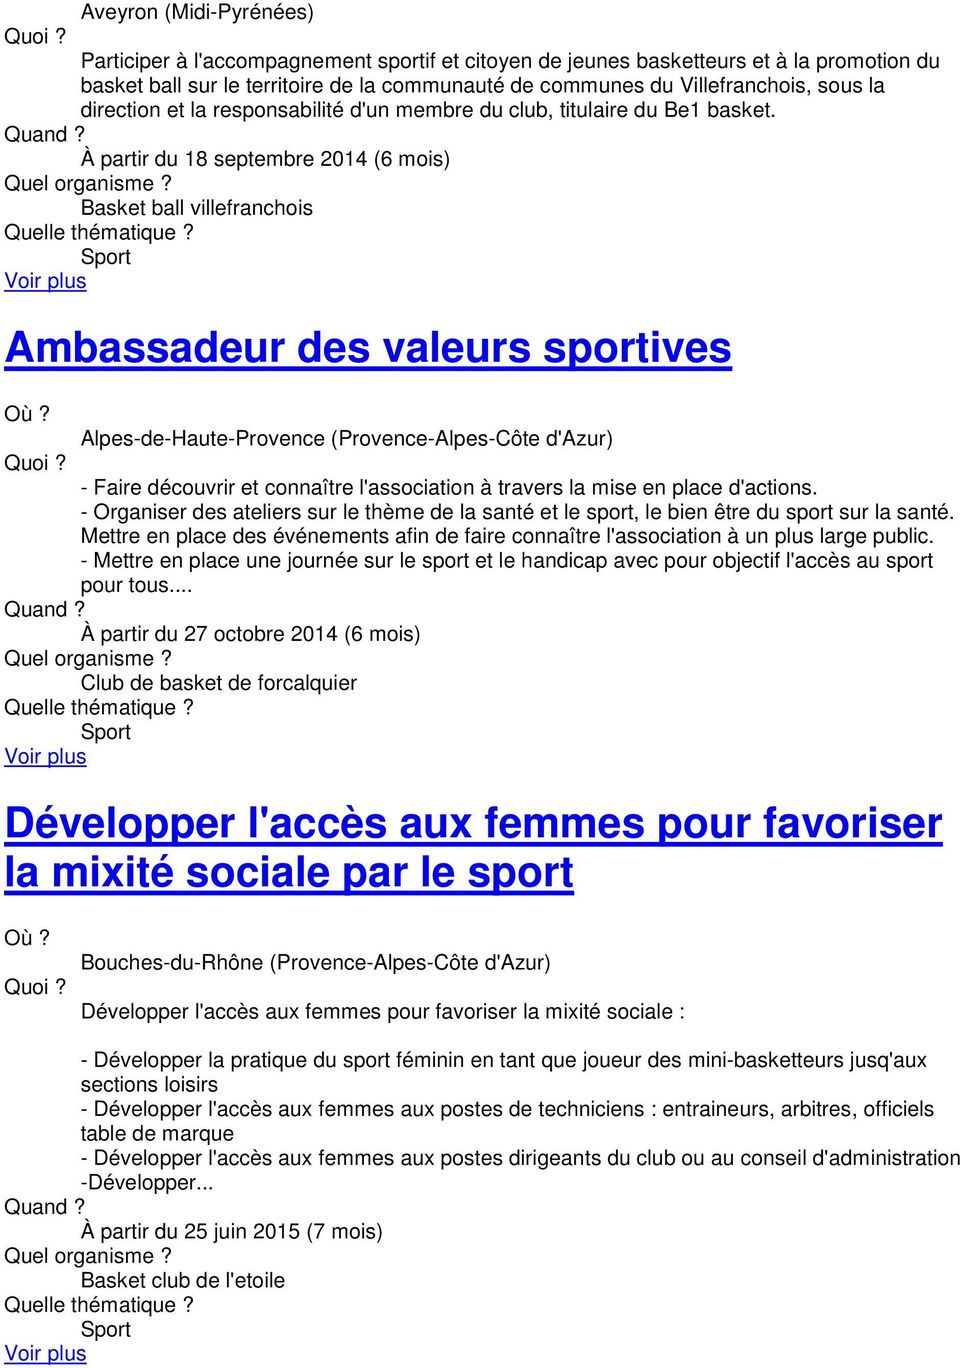 À partir du 18 septembre 2014 (6 mois) Basket ball villefranchois Ambassadeur des valeurs sportives Alpes-de-Haute-Provence (Provence-Alpes-Côte d'azur) - Faire découvrir et connaître l'association à